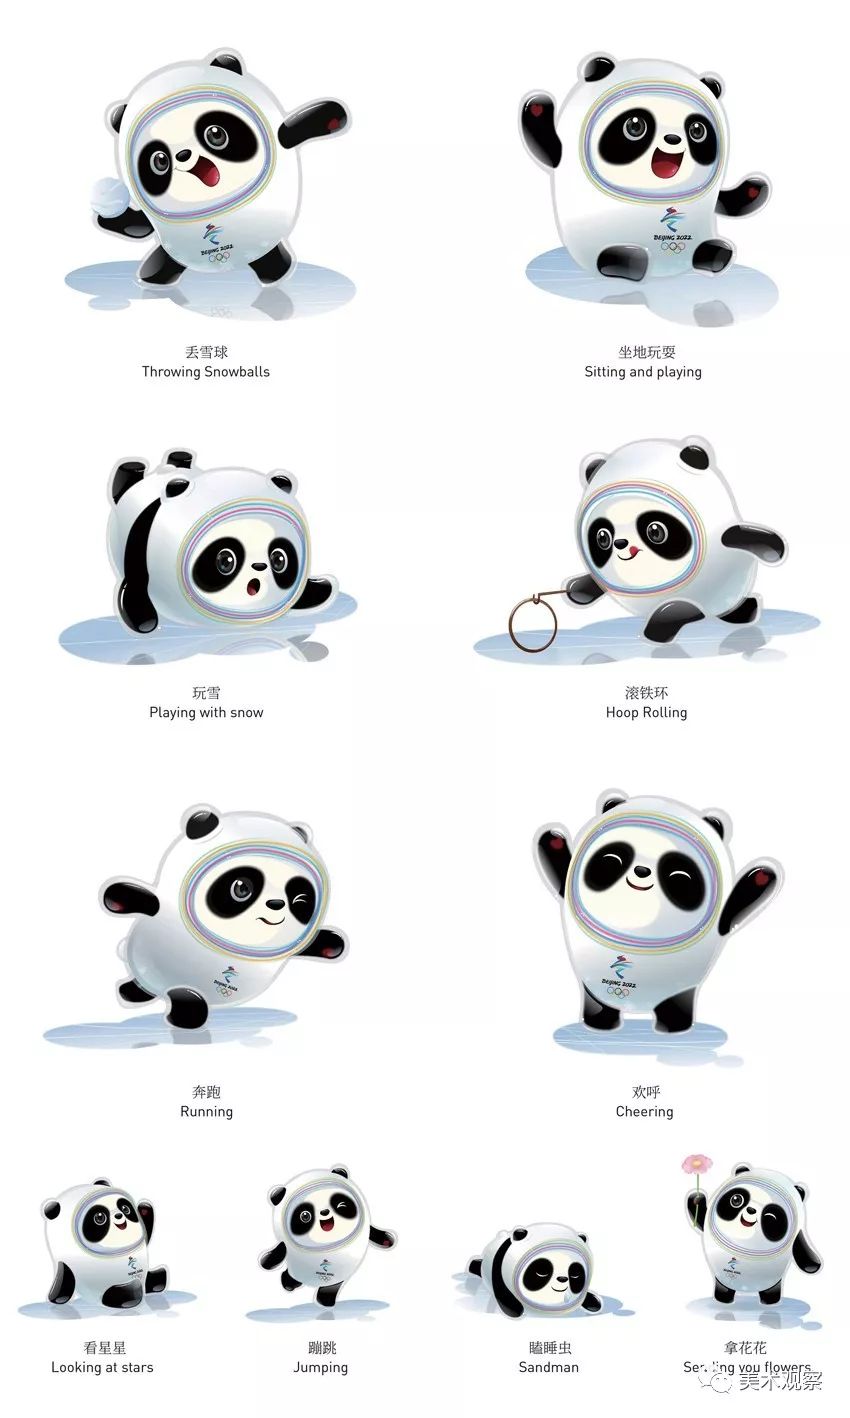 最终,被命名为"冰墩墩"的冰壳熊猫与"雪容融"一起被确定为2022年北京